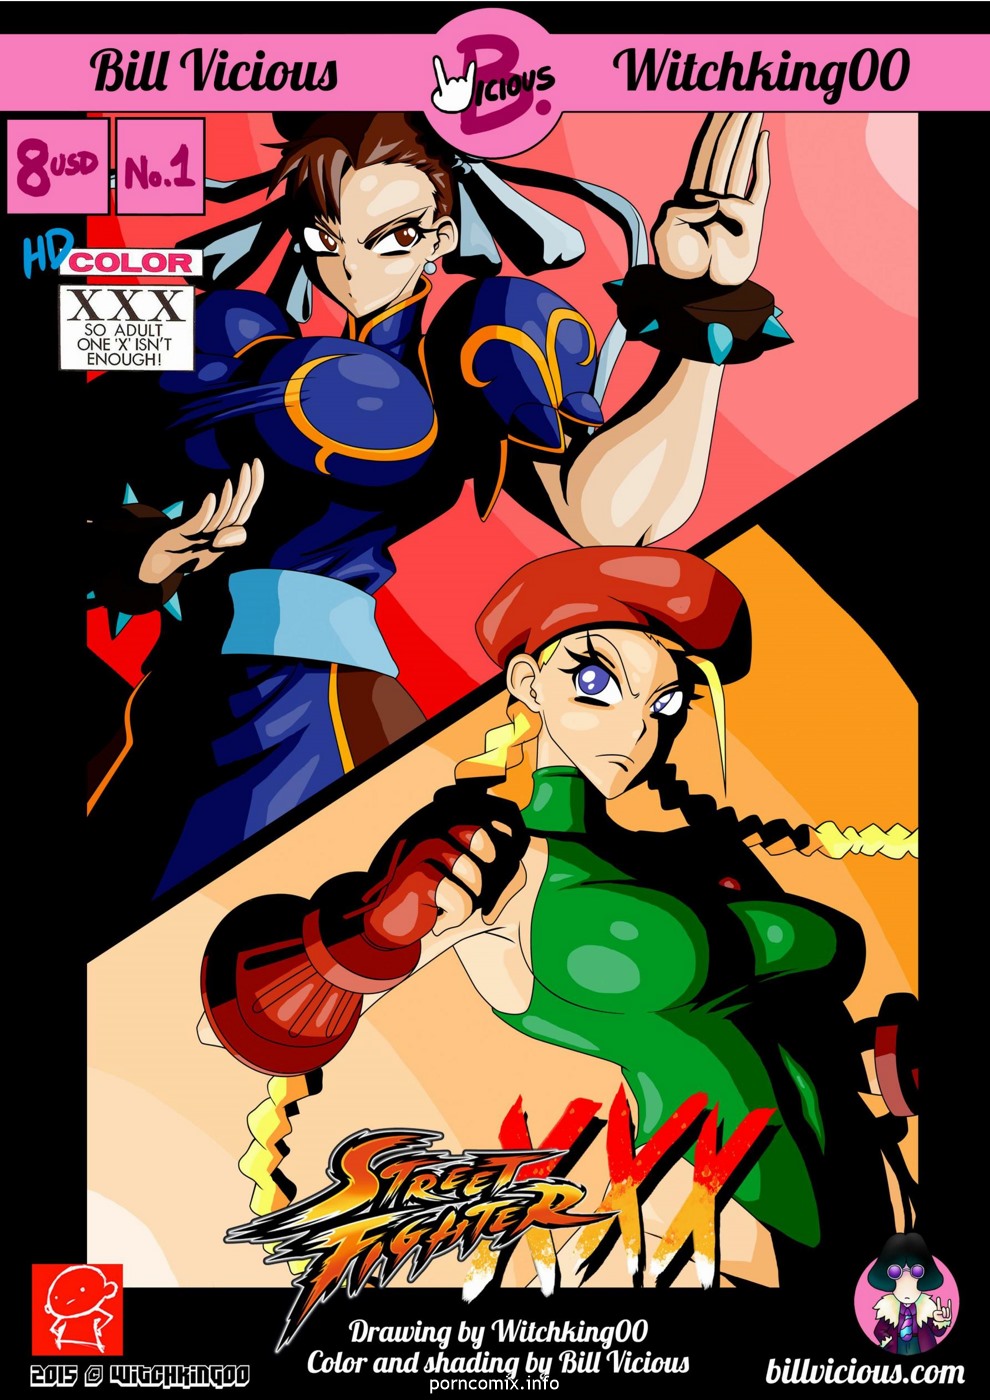 Street Fighter XXX